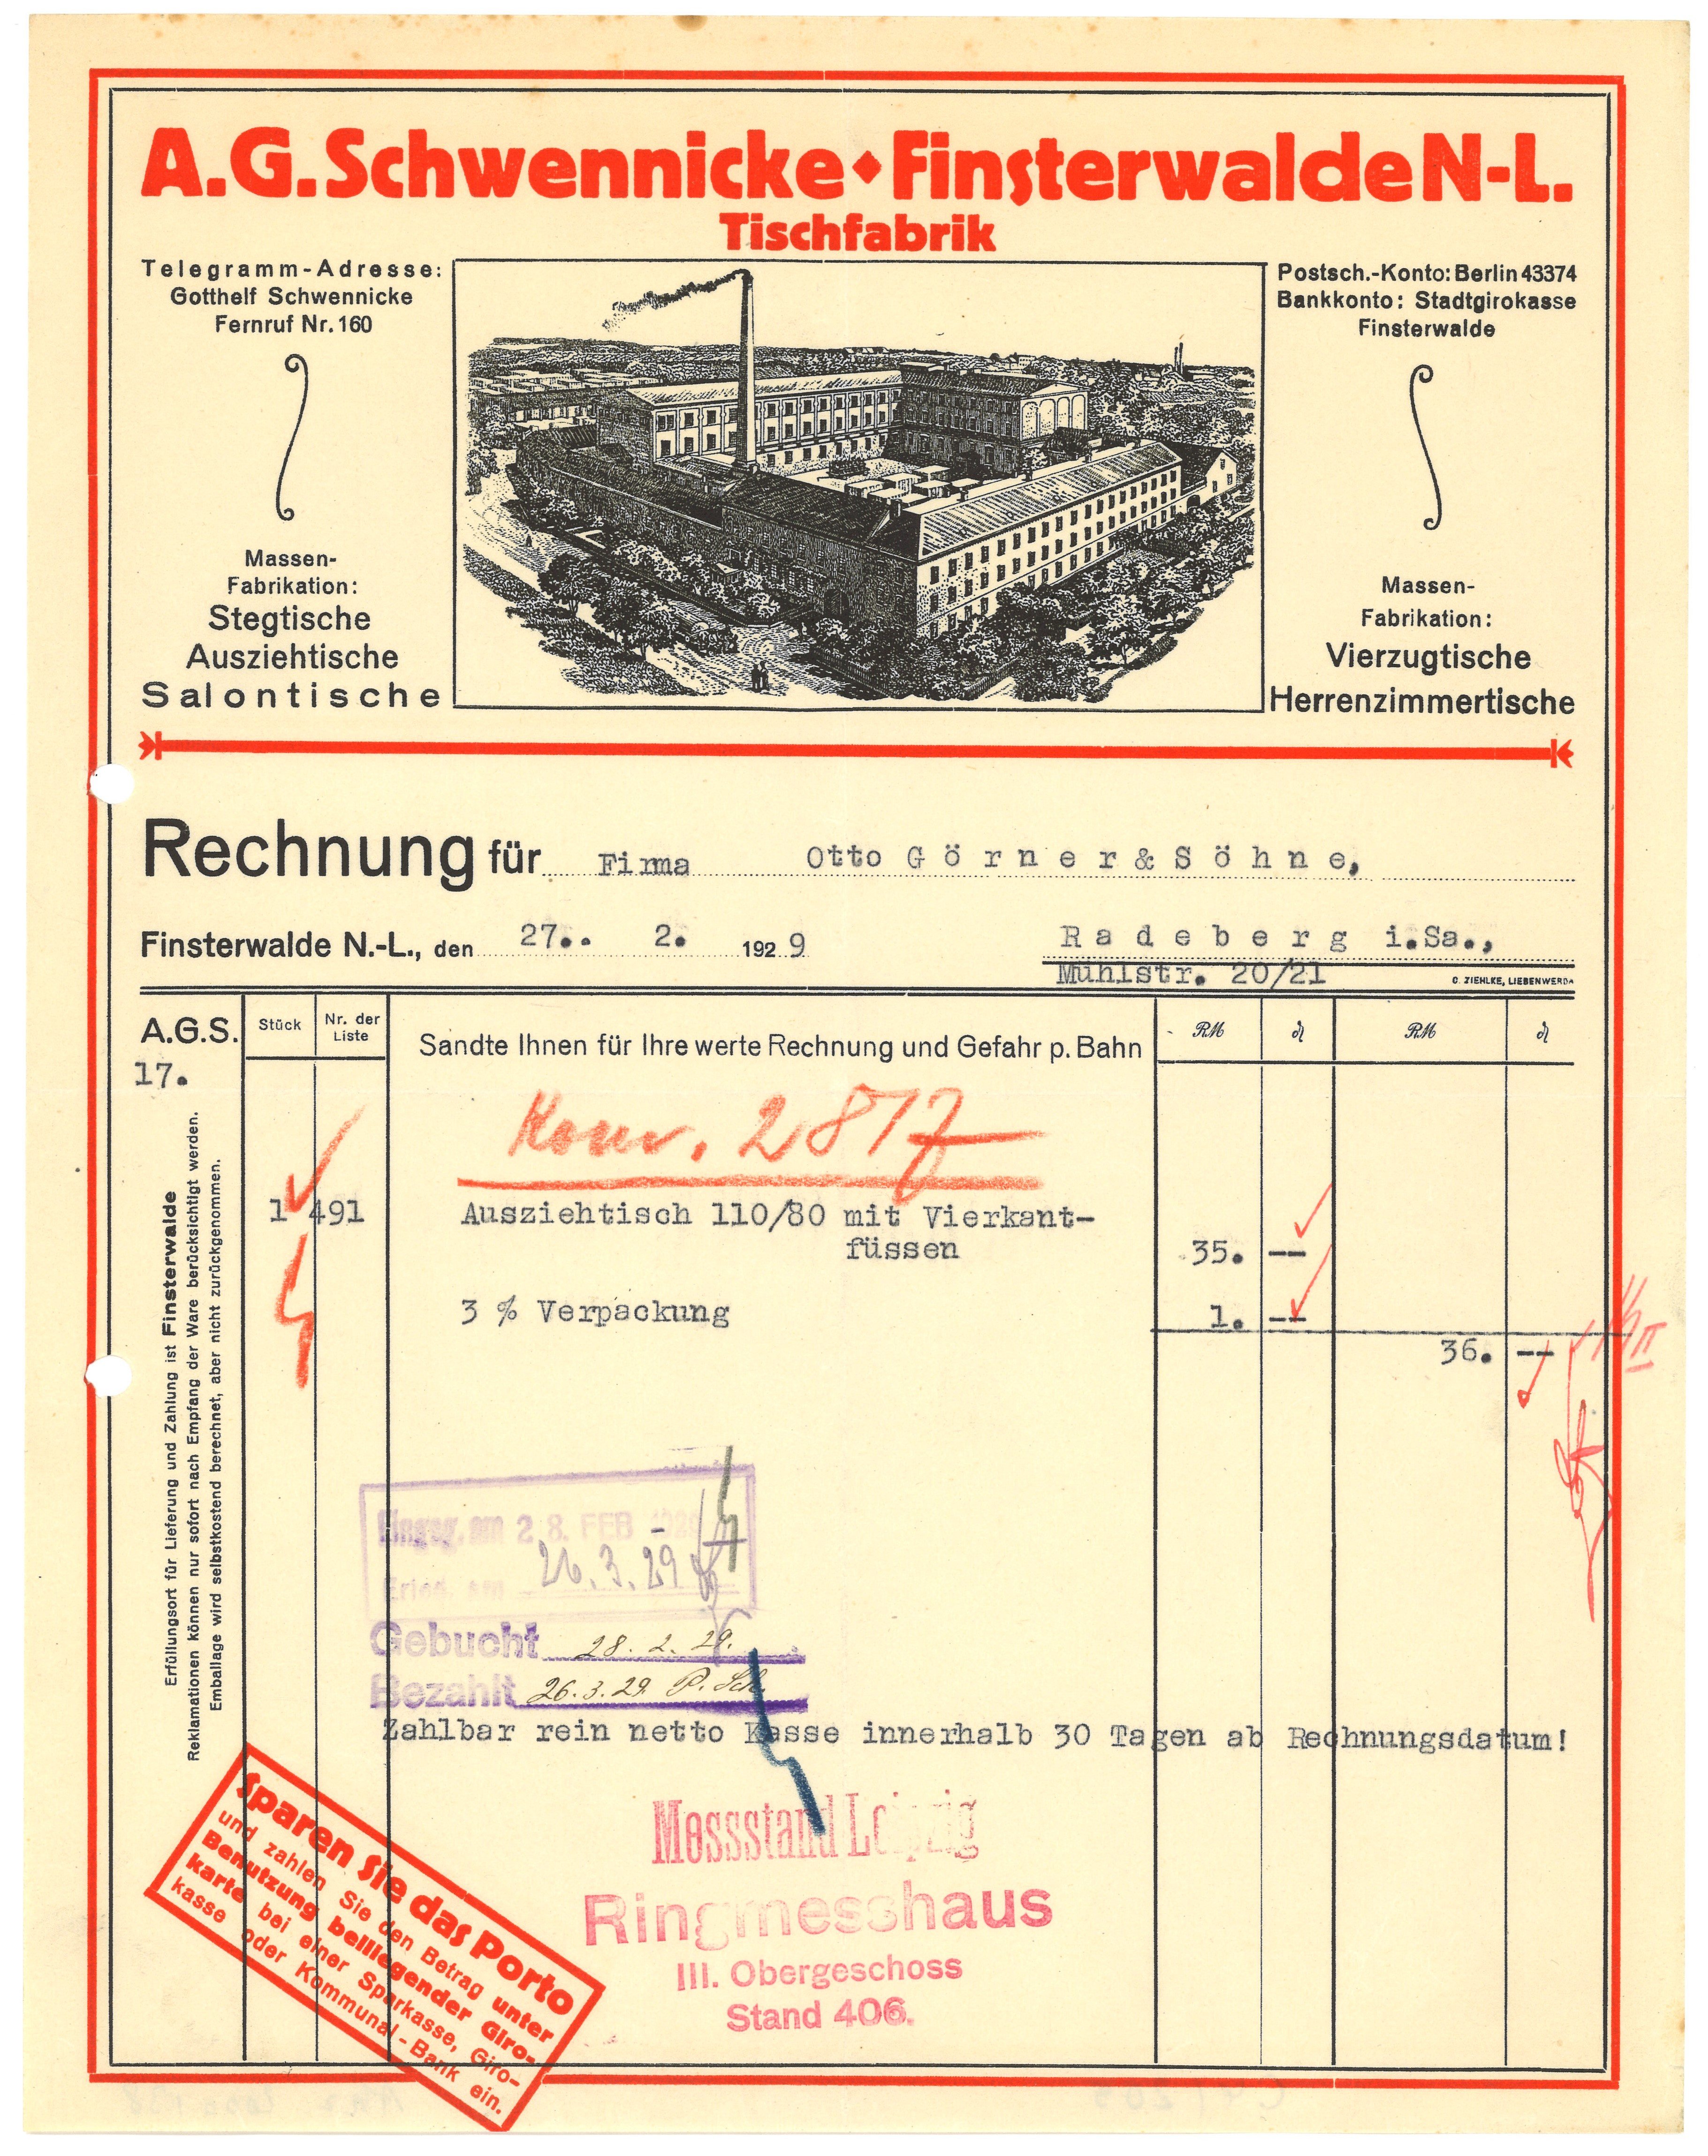 Rechnung der Tischfabrik A. G. Schwennicke in Finsterwalde 1929 (Landesgeschichtliche Vereinigung für die Mark Brandenburg e.V., Archiv CC BY)